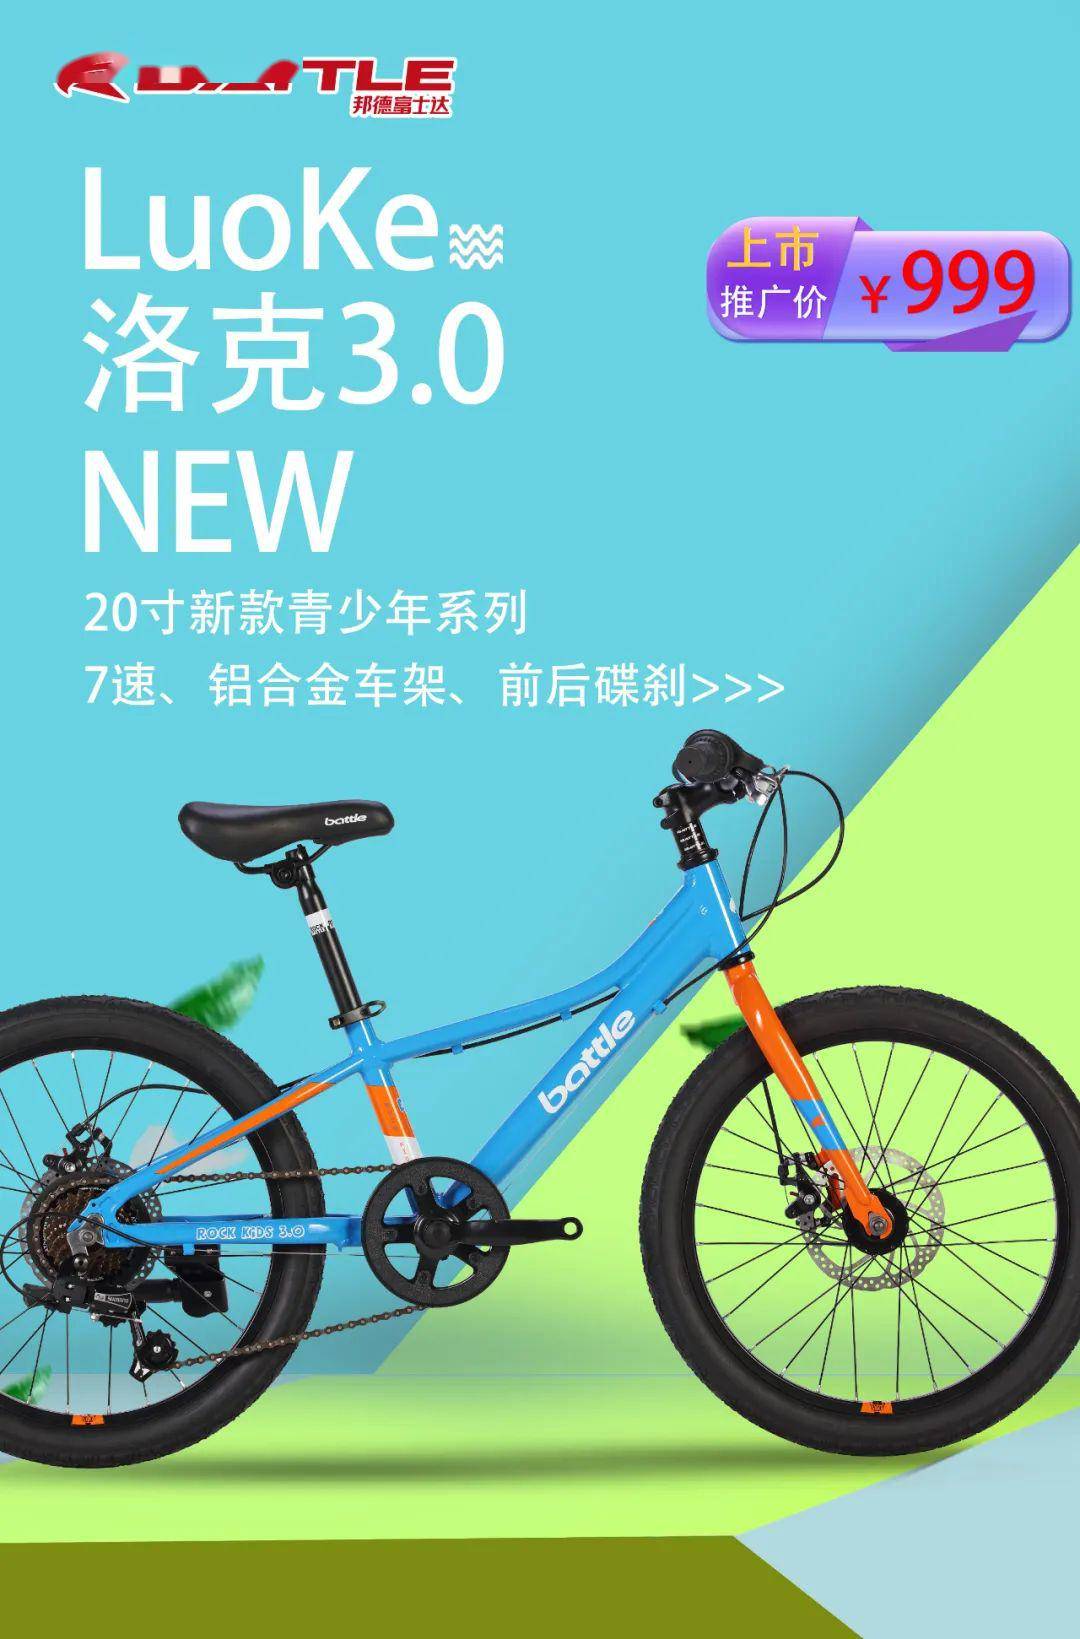 富士达集团battle品牌20寸新款青少年运动单车:洛克3.